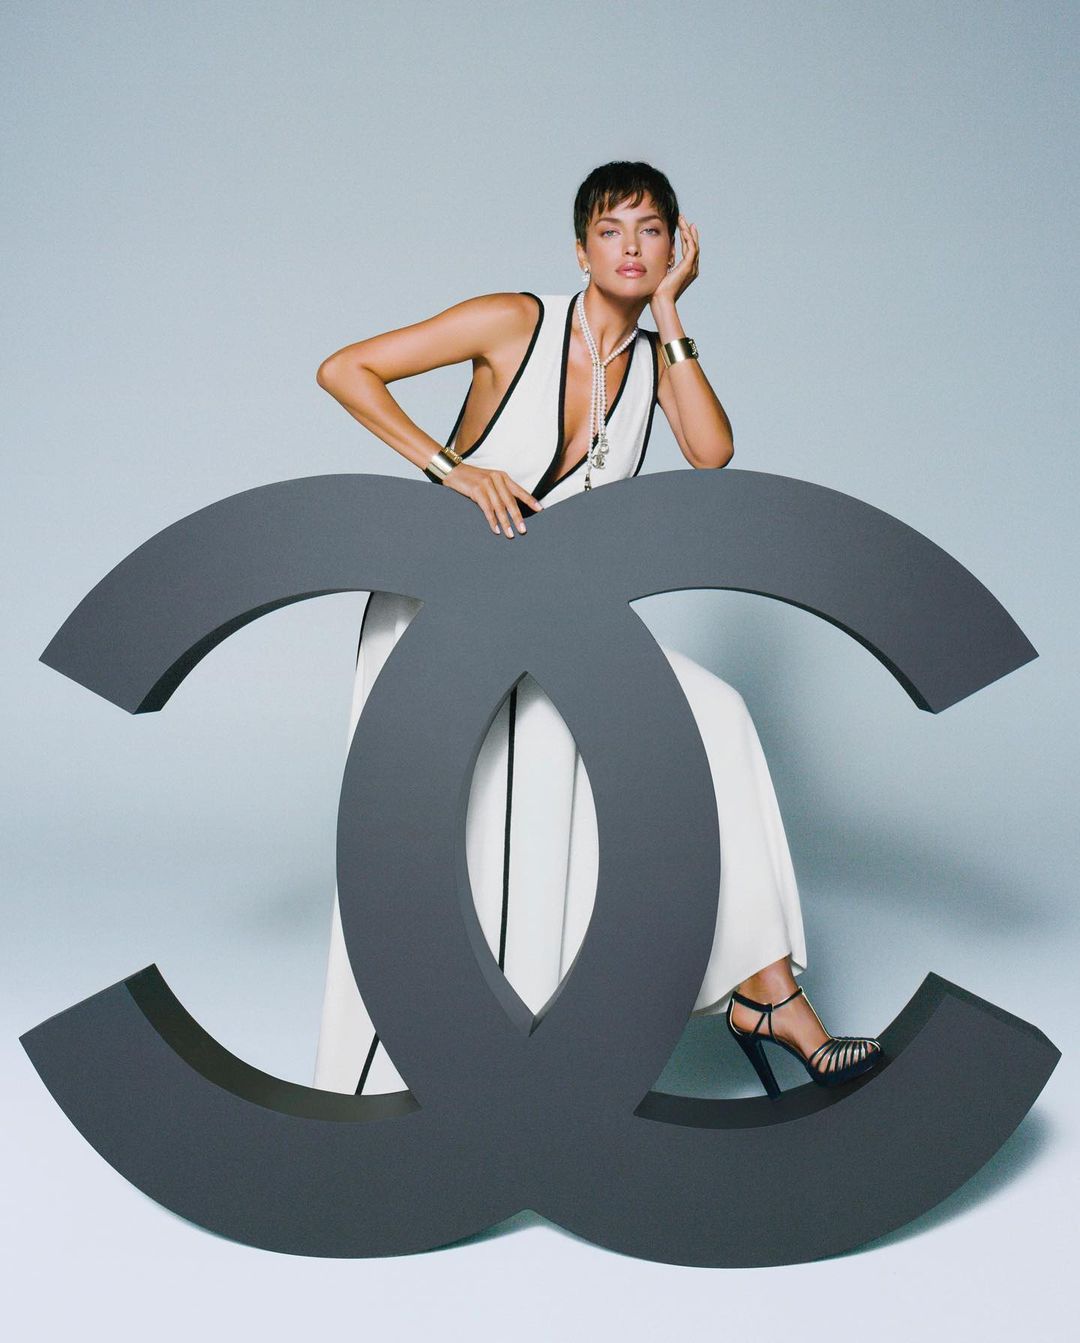 У вбраннях від Chanel та з короткою стрижкою: Ірина Шейк знялася в новій фотосесії для Vogue